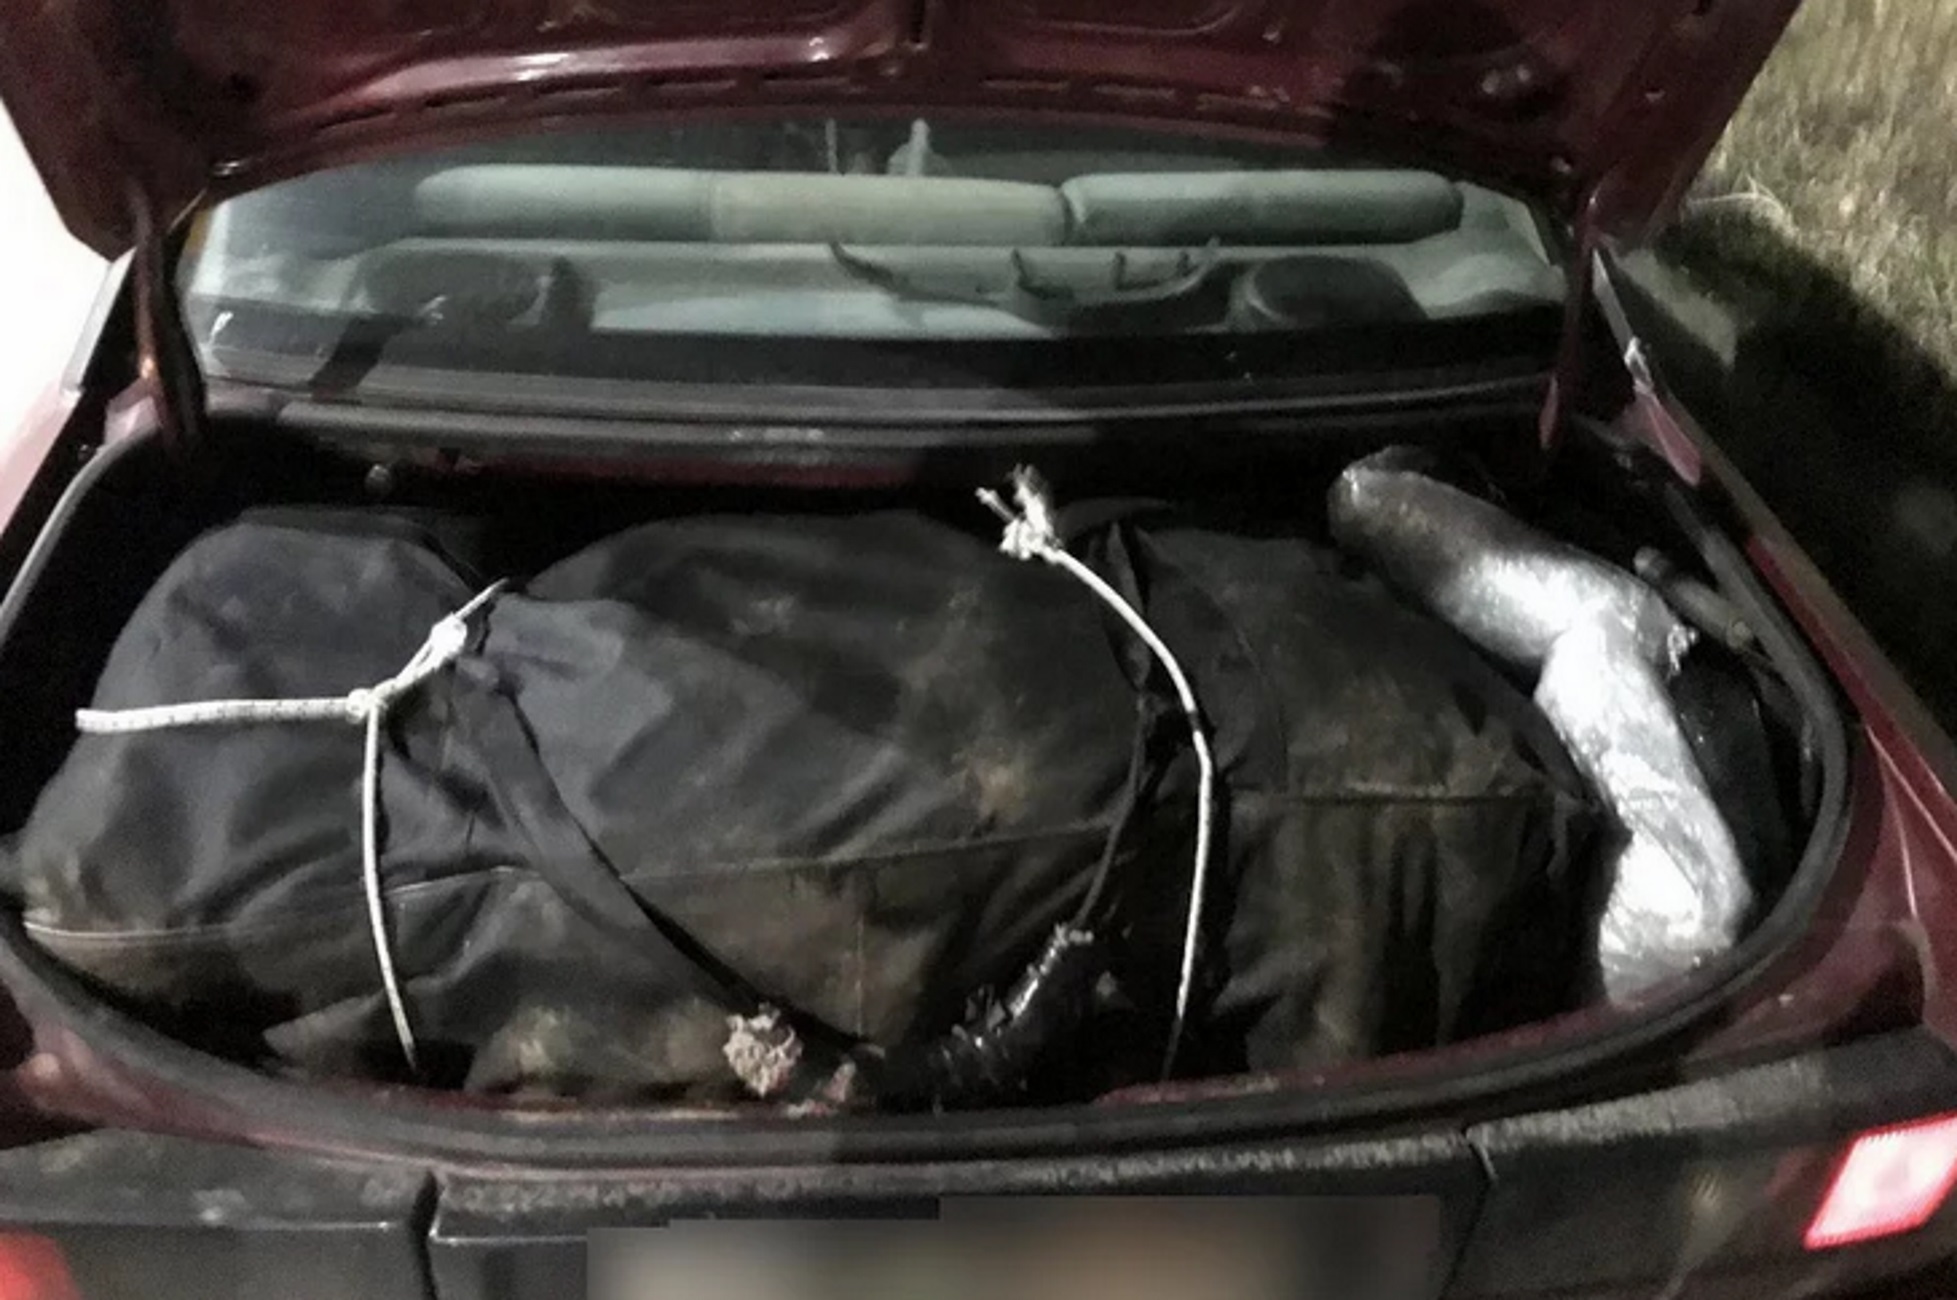 Φλώρινα: Μέσα στο αυτοκίνητο 55 κιλά κάνναβης – Δύο συλλήψεις μετά τον έλεγχο